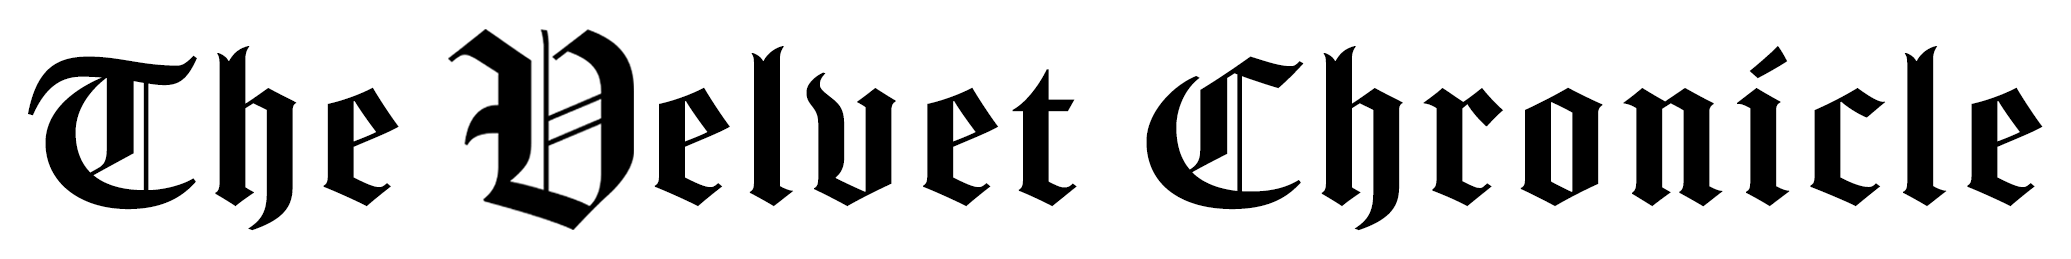 The Velvet Chronicle site logo